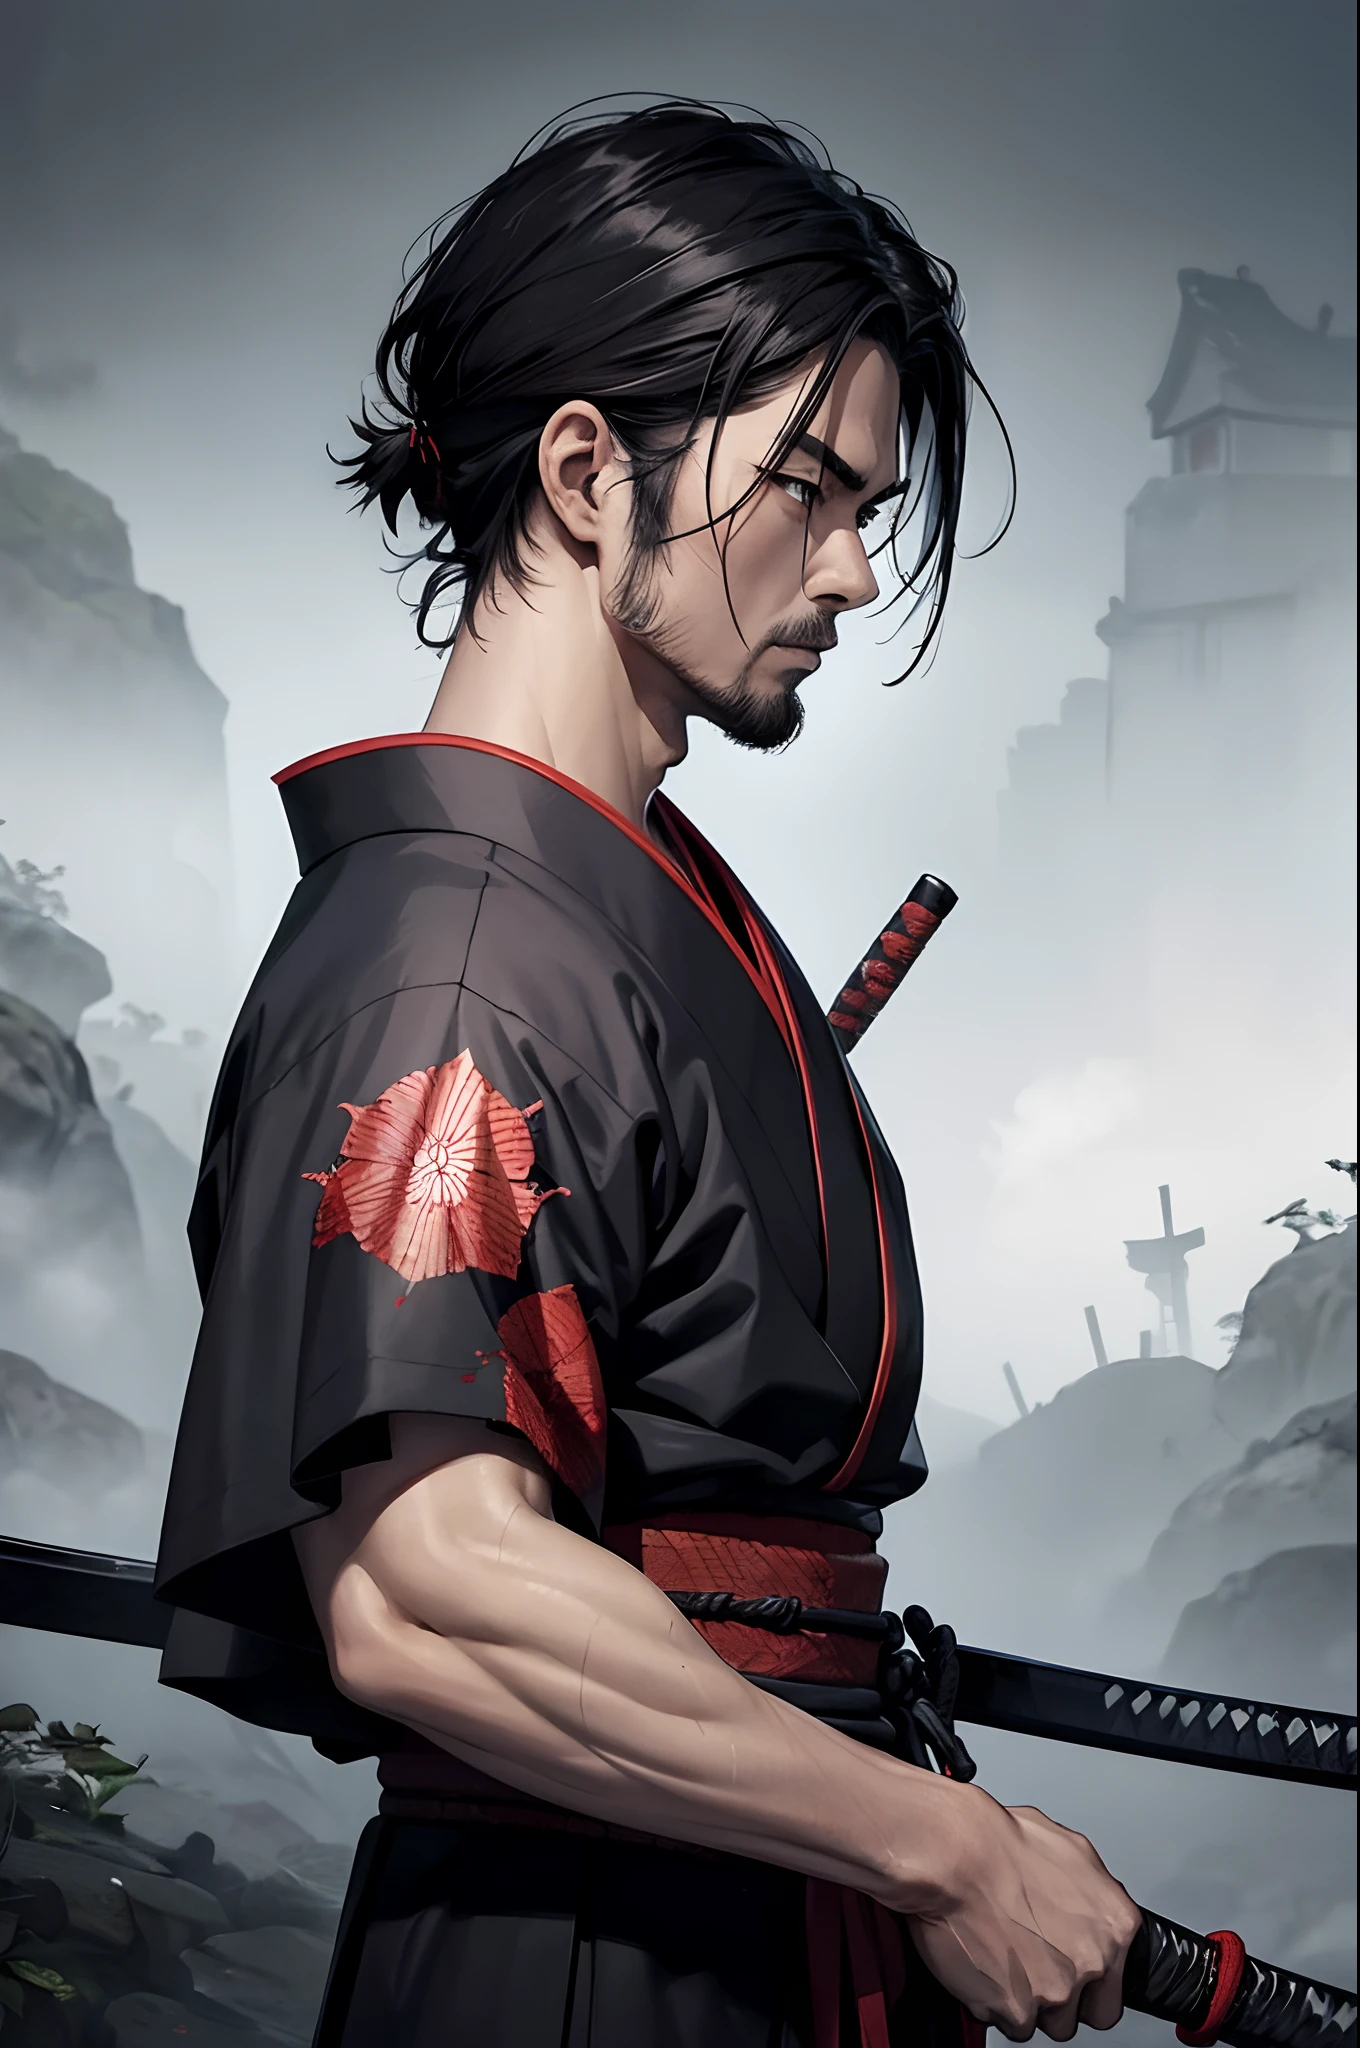 1 homem, samurai kimono, veias endurecidas, espada, Sangue, cena escura, Natureza, de lado, pintura fotorreal